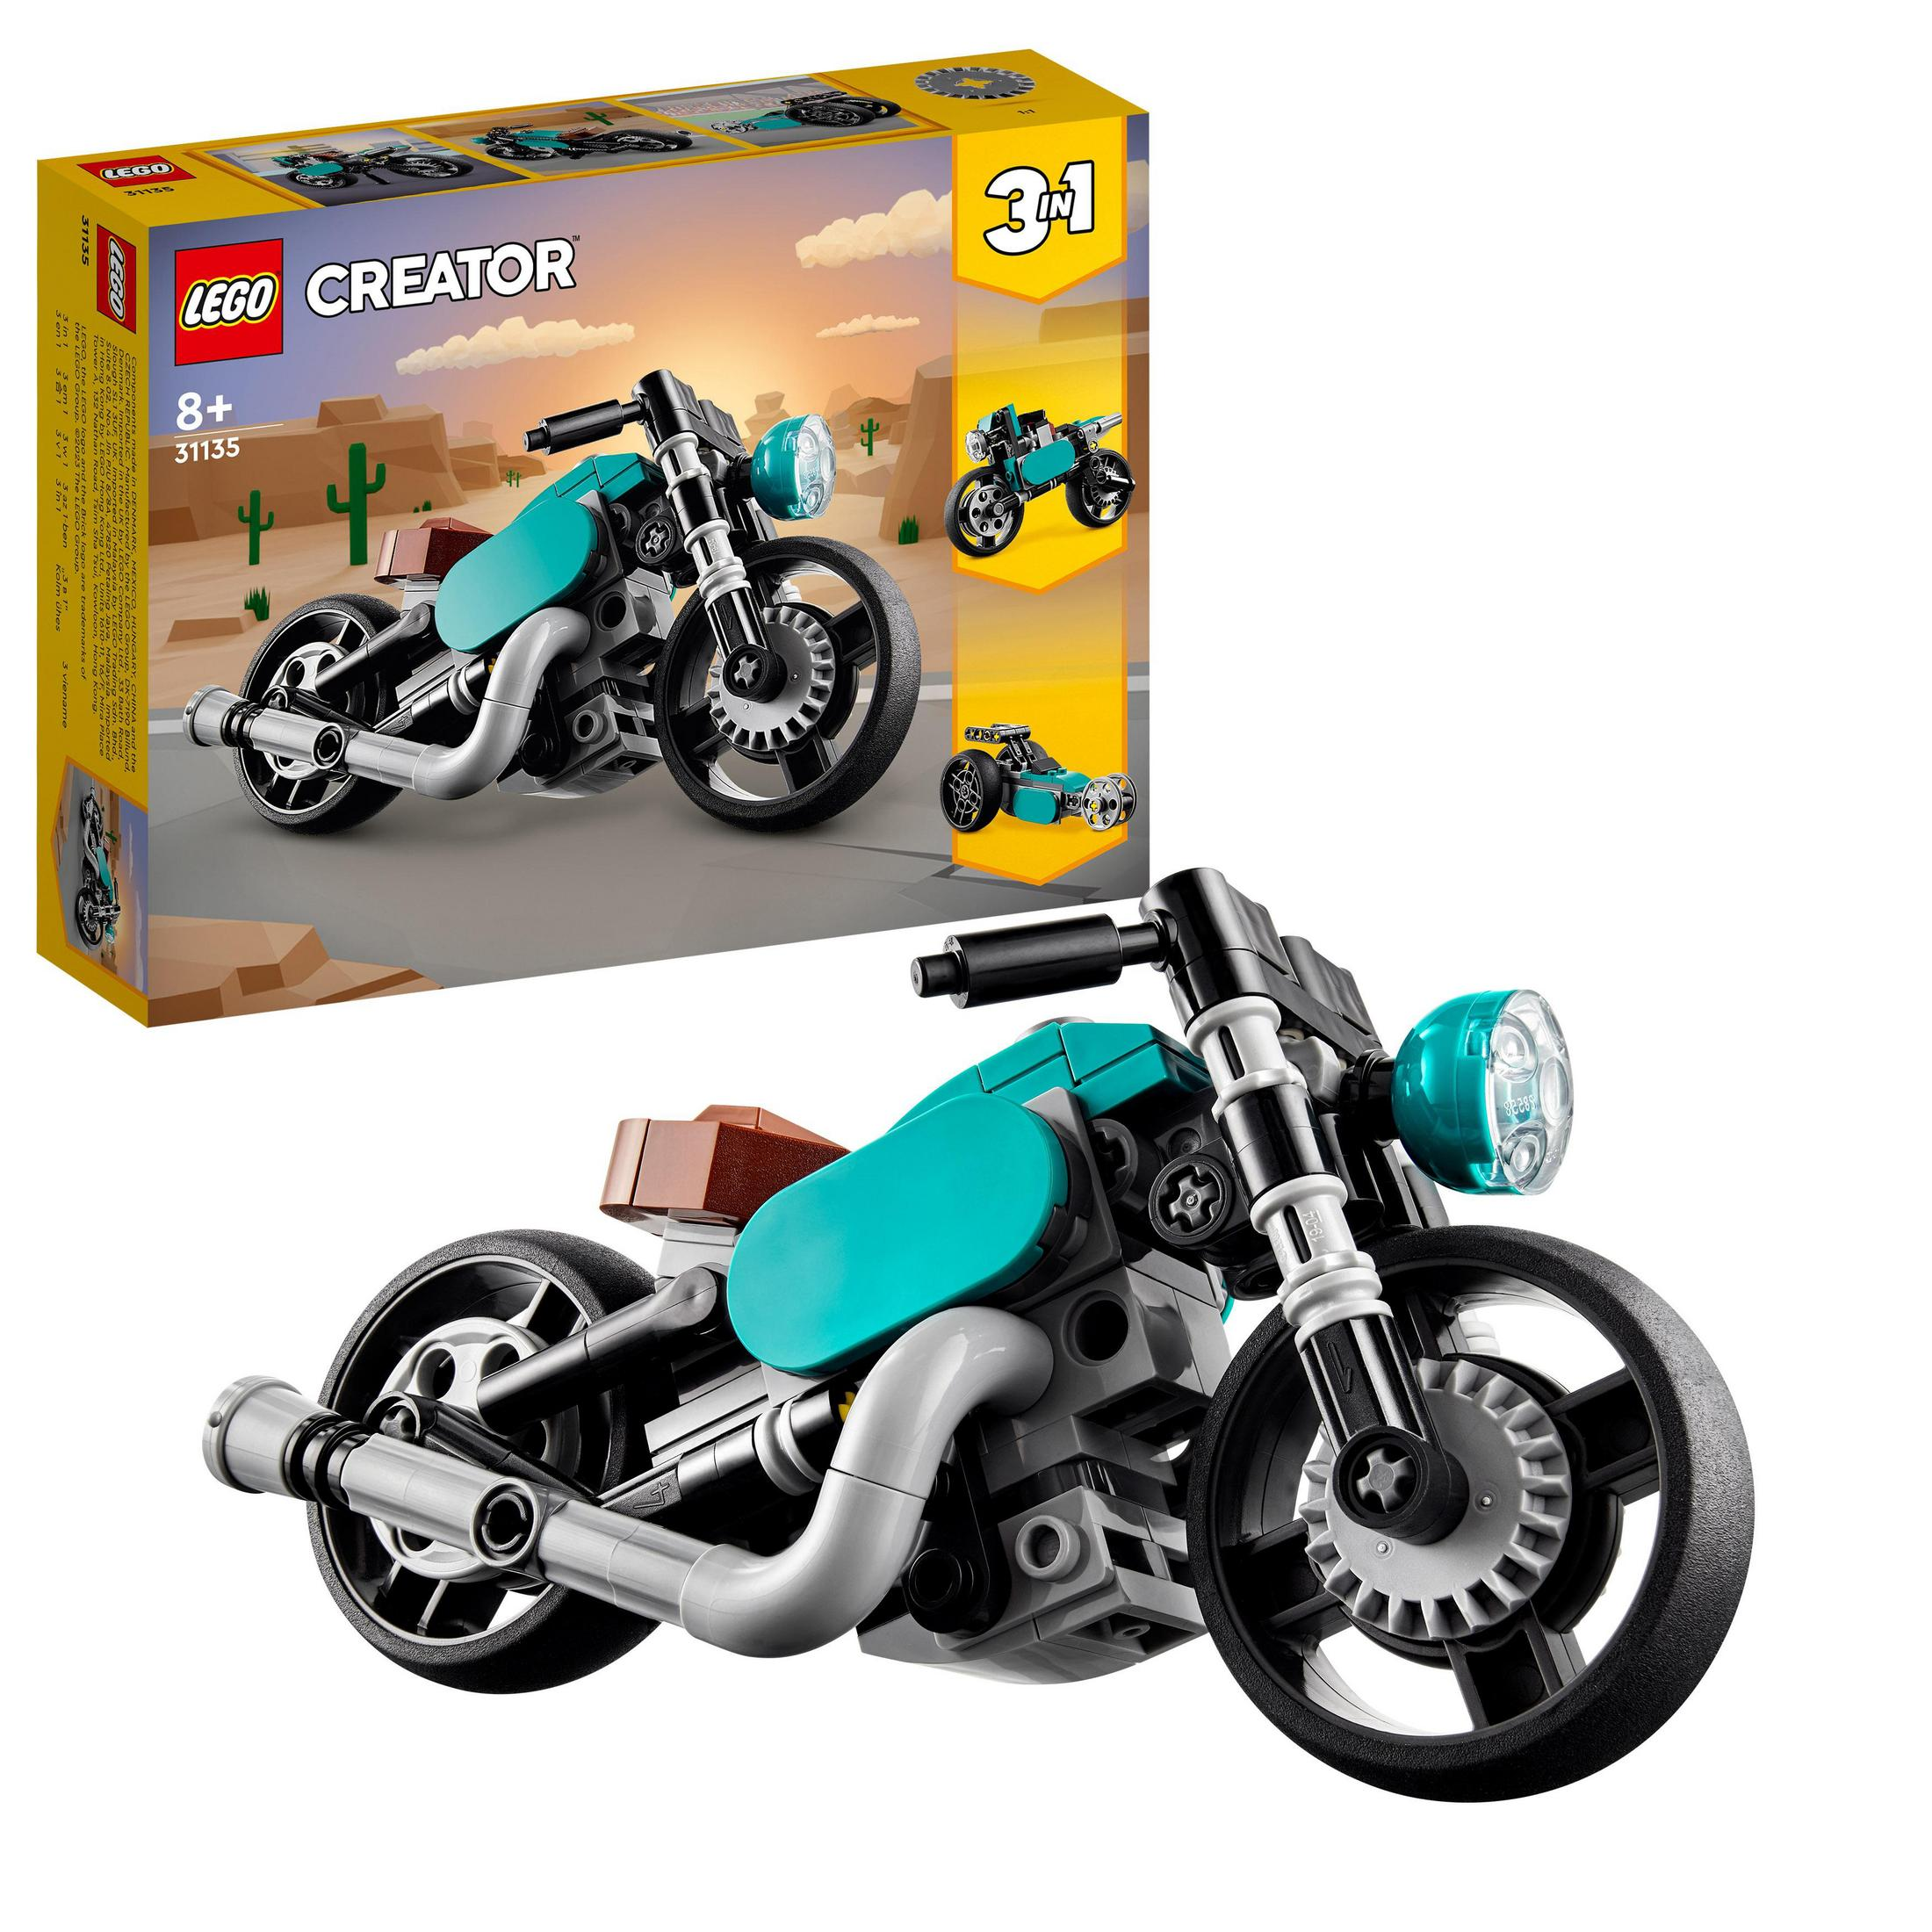 OLDTIMER Mehrfarbig LEGO MOTORRAD Bausatz, 31135